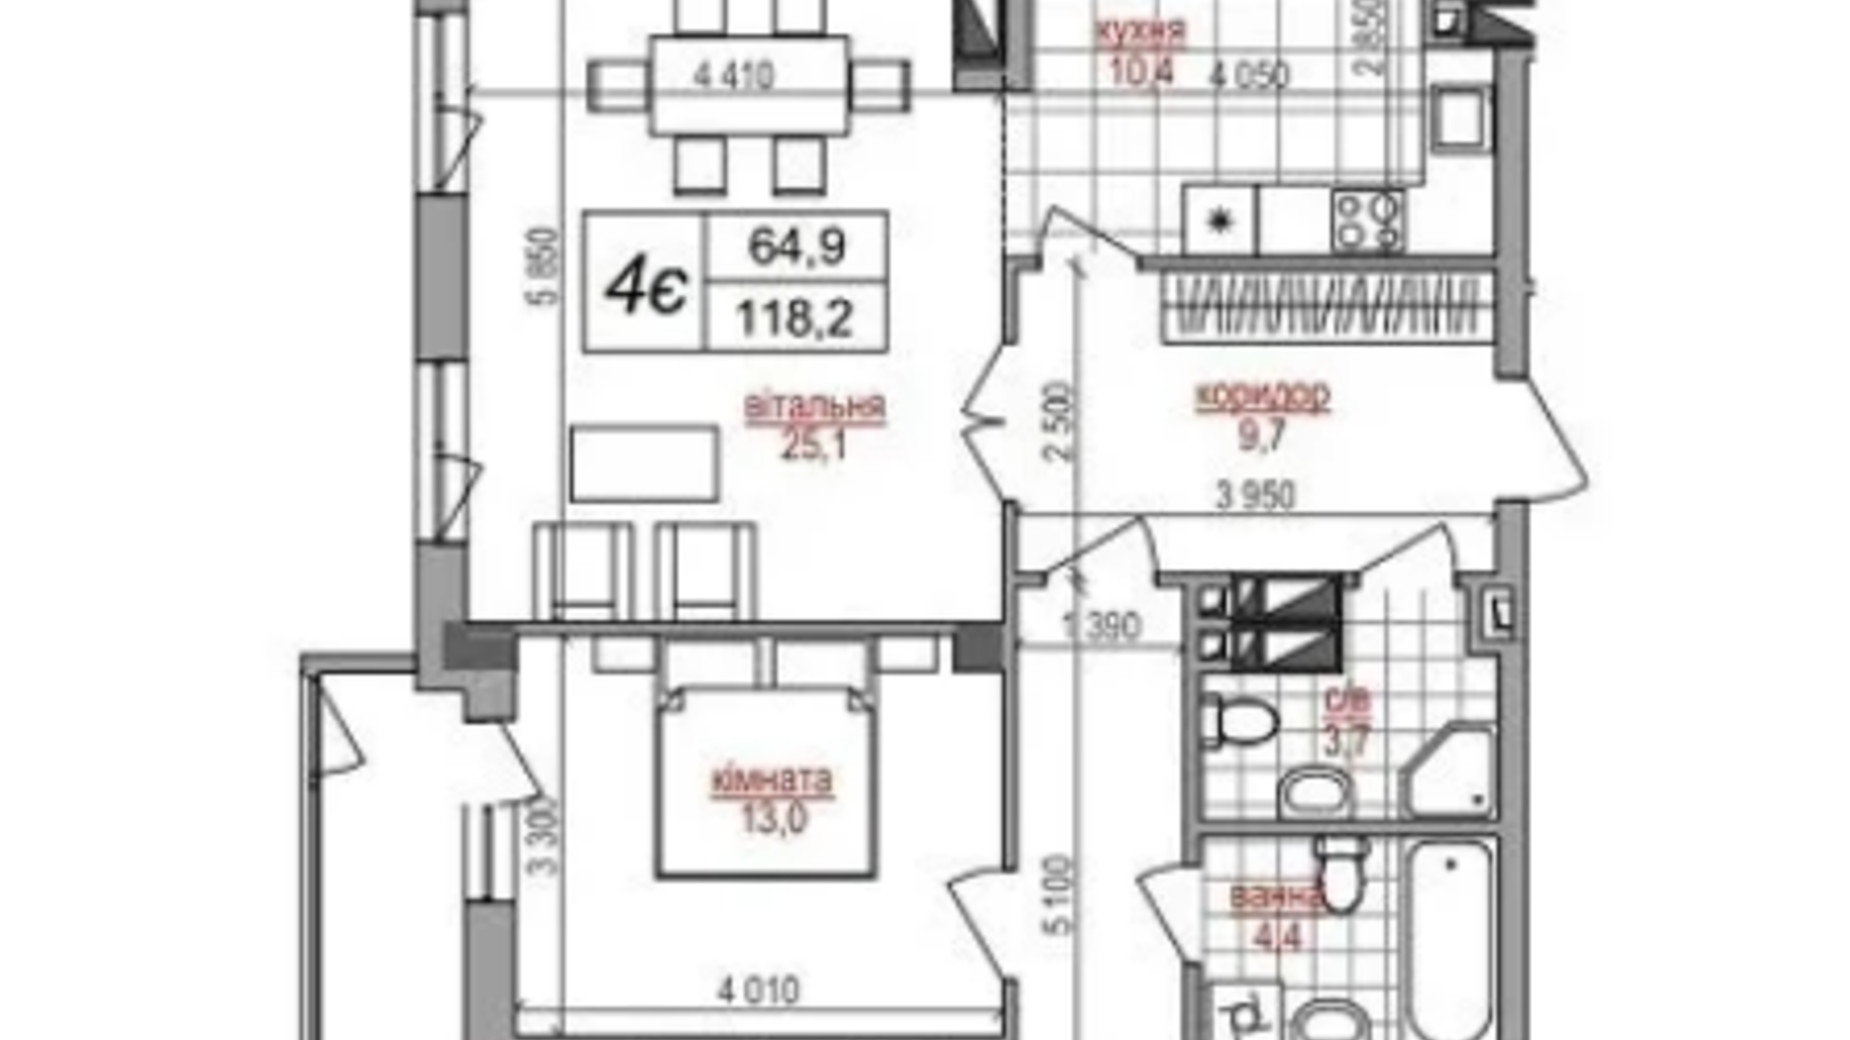 Планировка 4-комнатной квартиры в ЖК West House 118.2 м², фото 635227